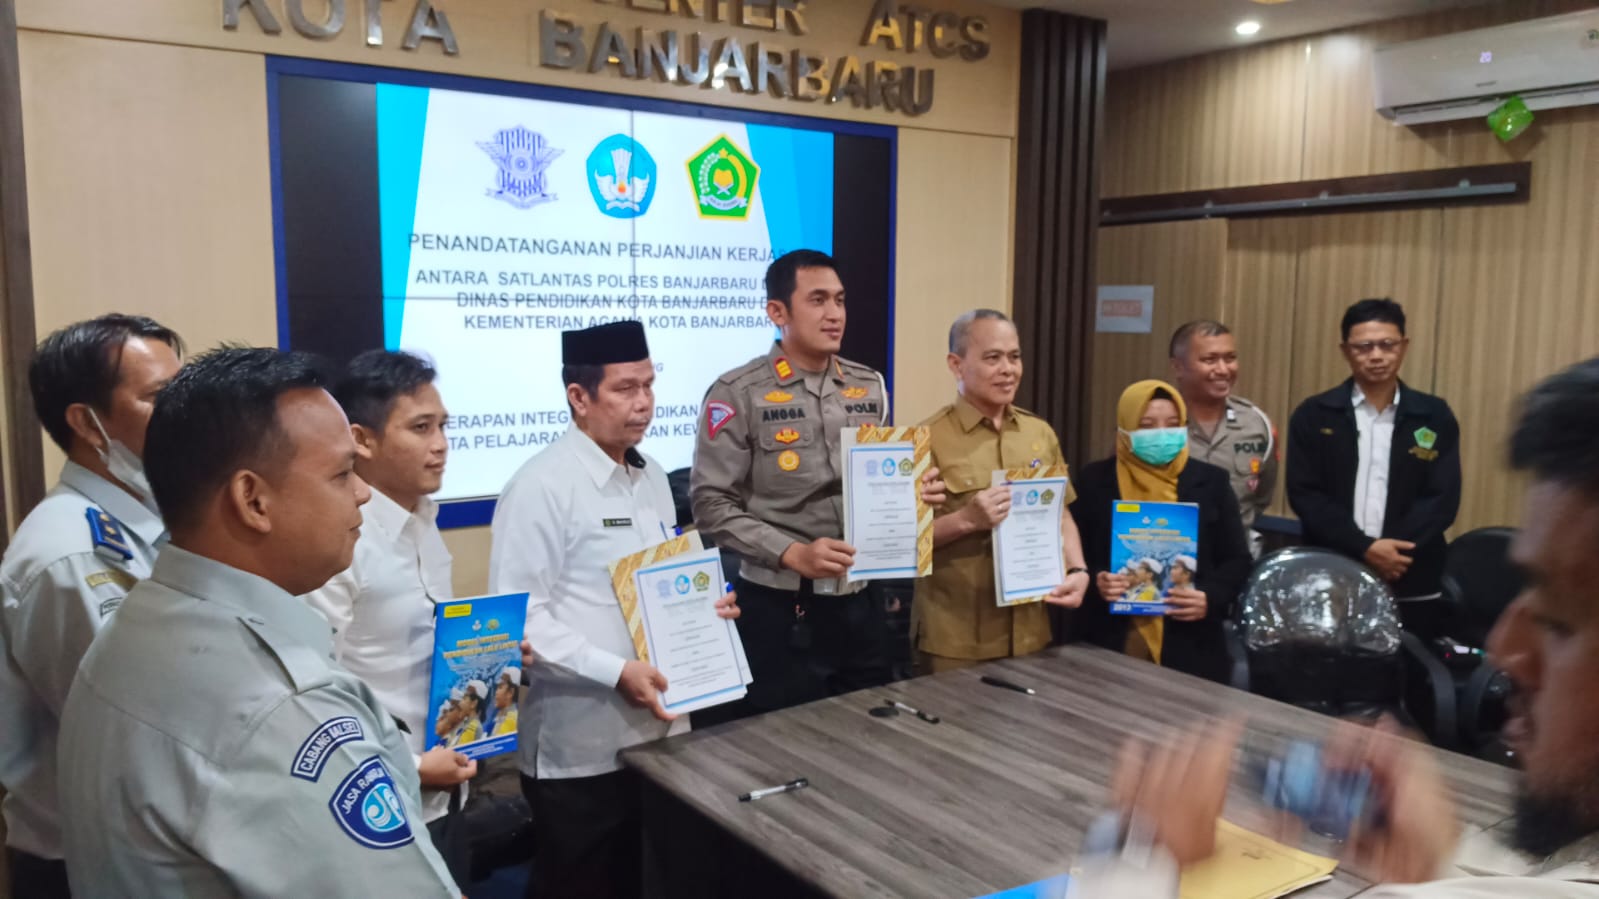 Penerapan Integrasi Pendidikan Lalu Lintas Resmi Ditandatangani Di Ruang Kendali ATCS Dishub Banjarbaru